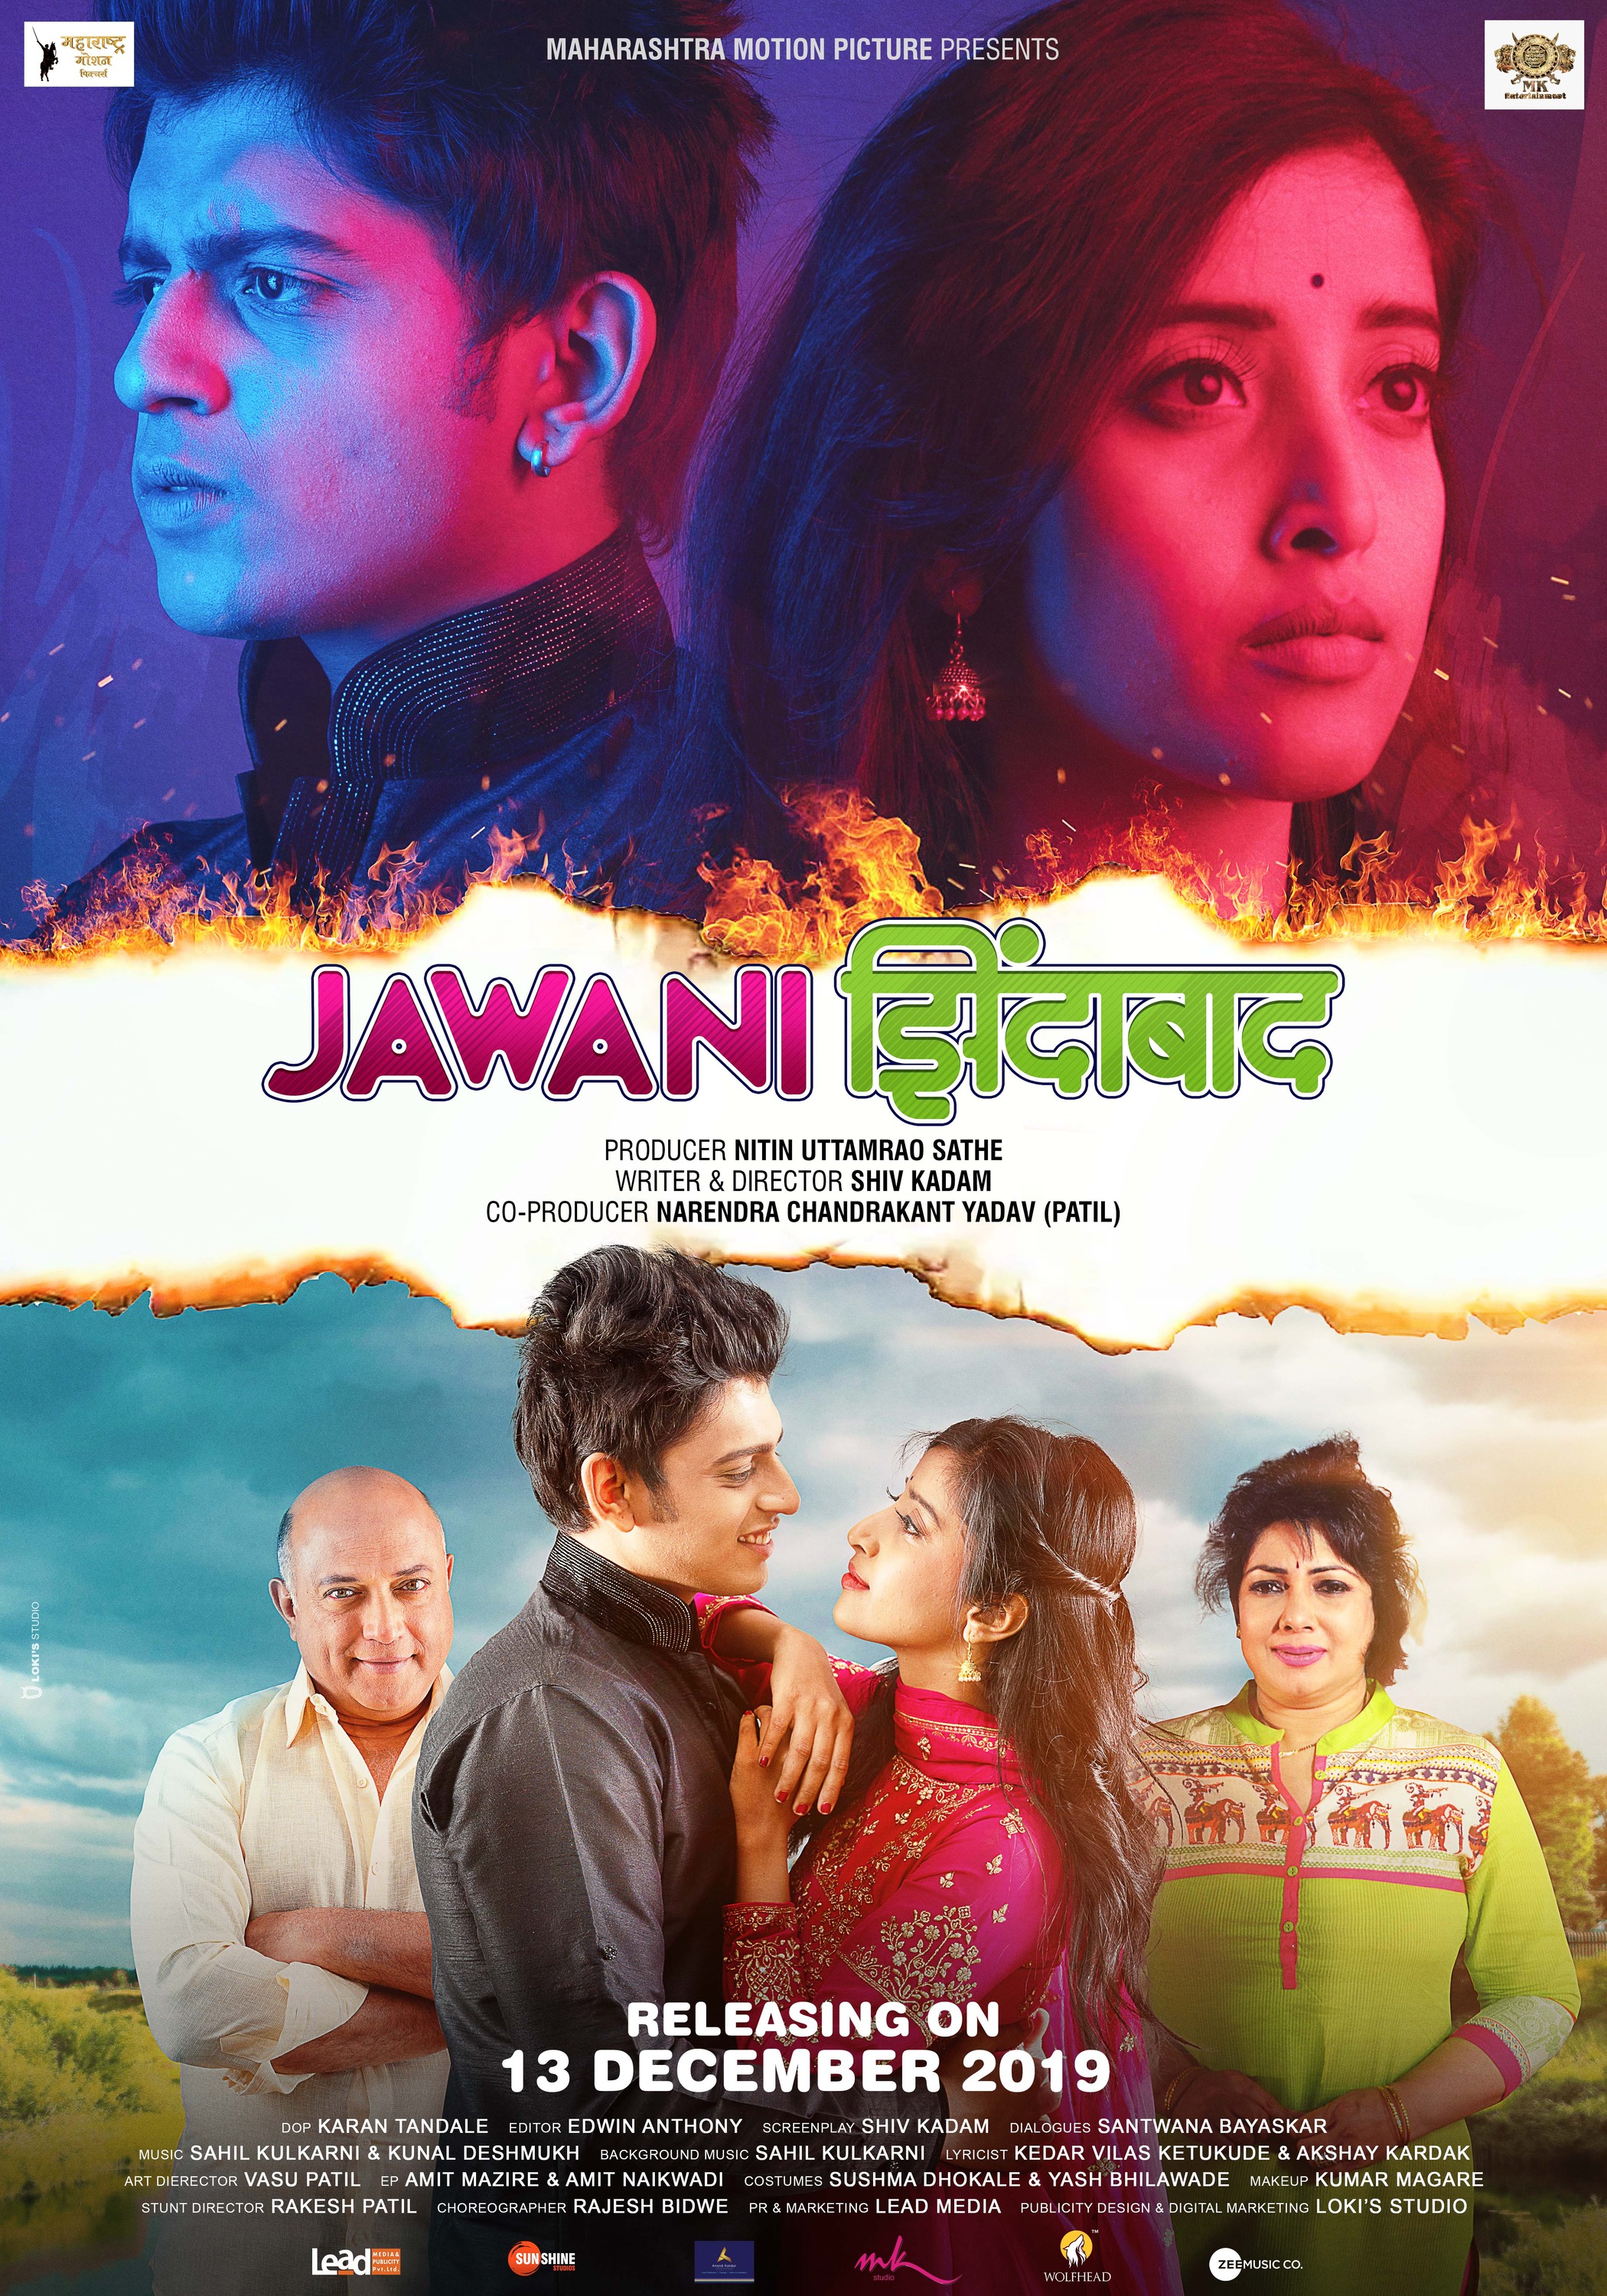 Mega Sized Movie Poster Image for Jawani Zindabad (#2 of 2)